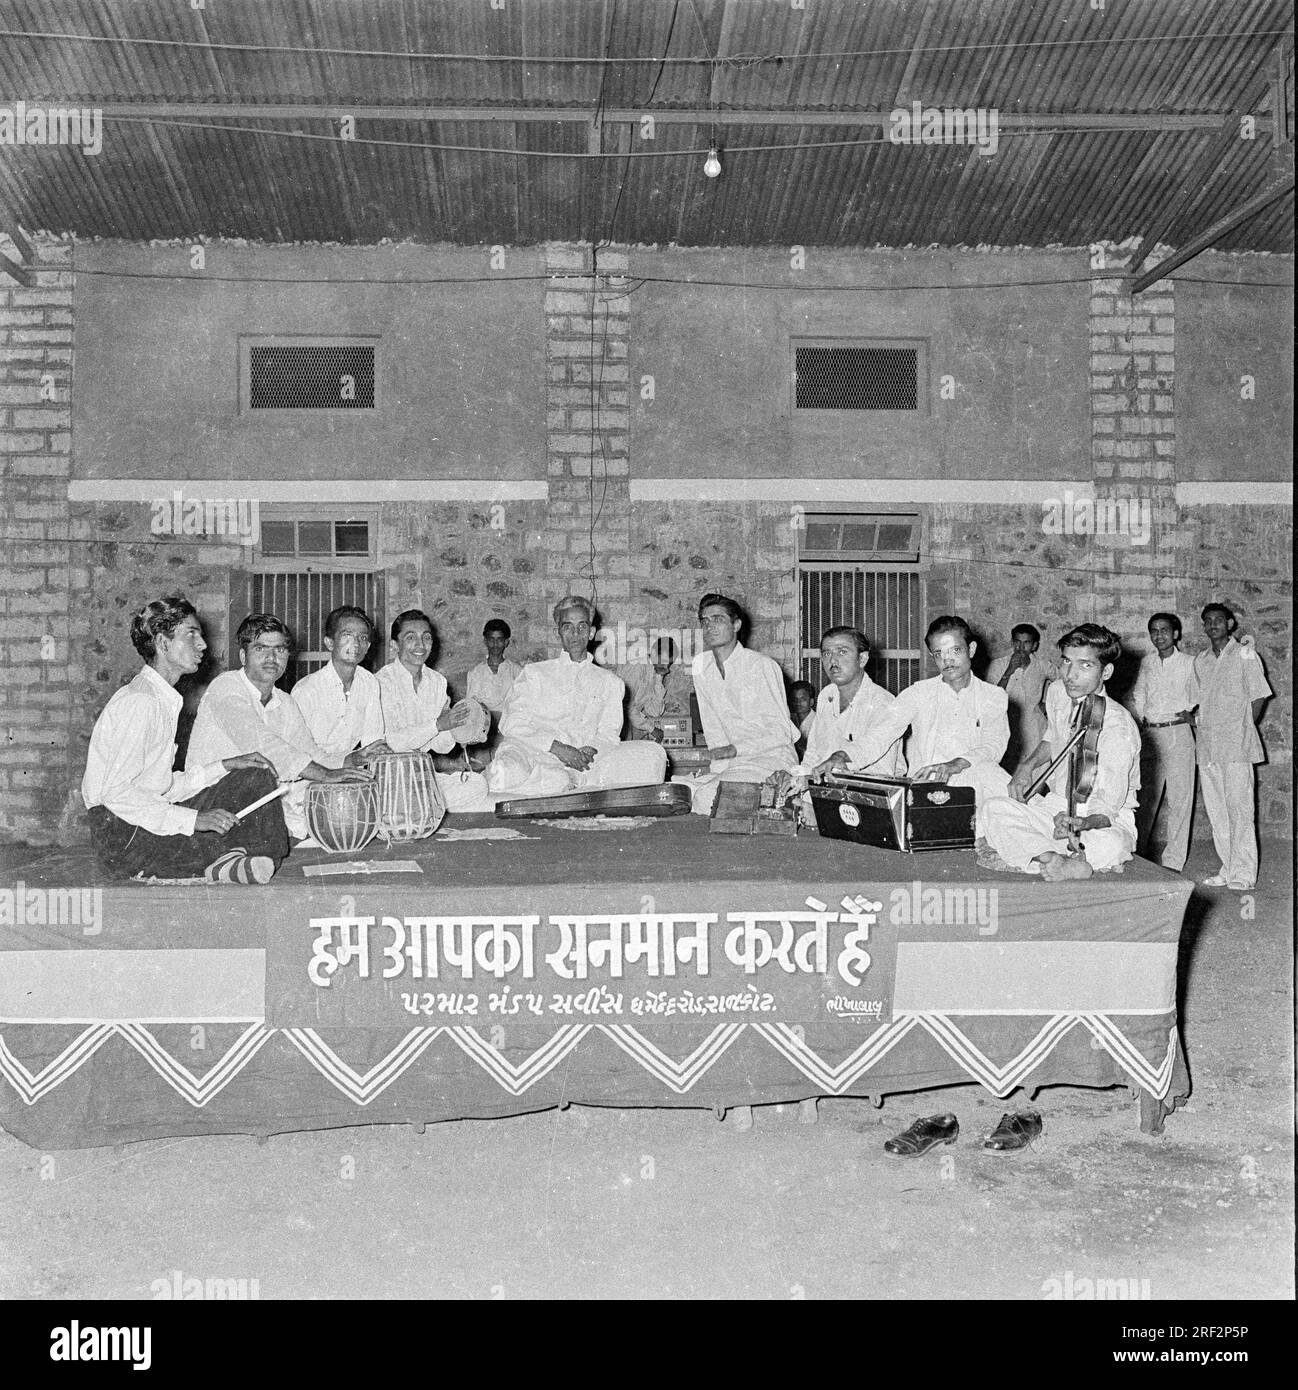 Vieux vintage des années 1900 photo en noir et blanc de scène musicale indienne spectacle harmonium tabla Inde des années 1940 Banque D'Images